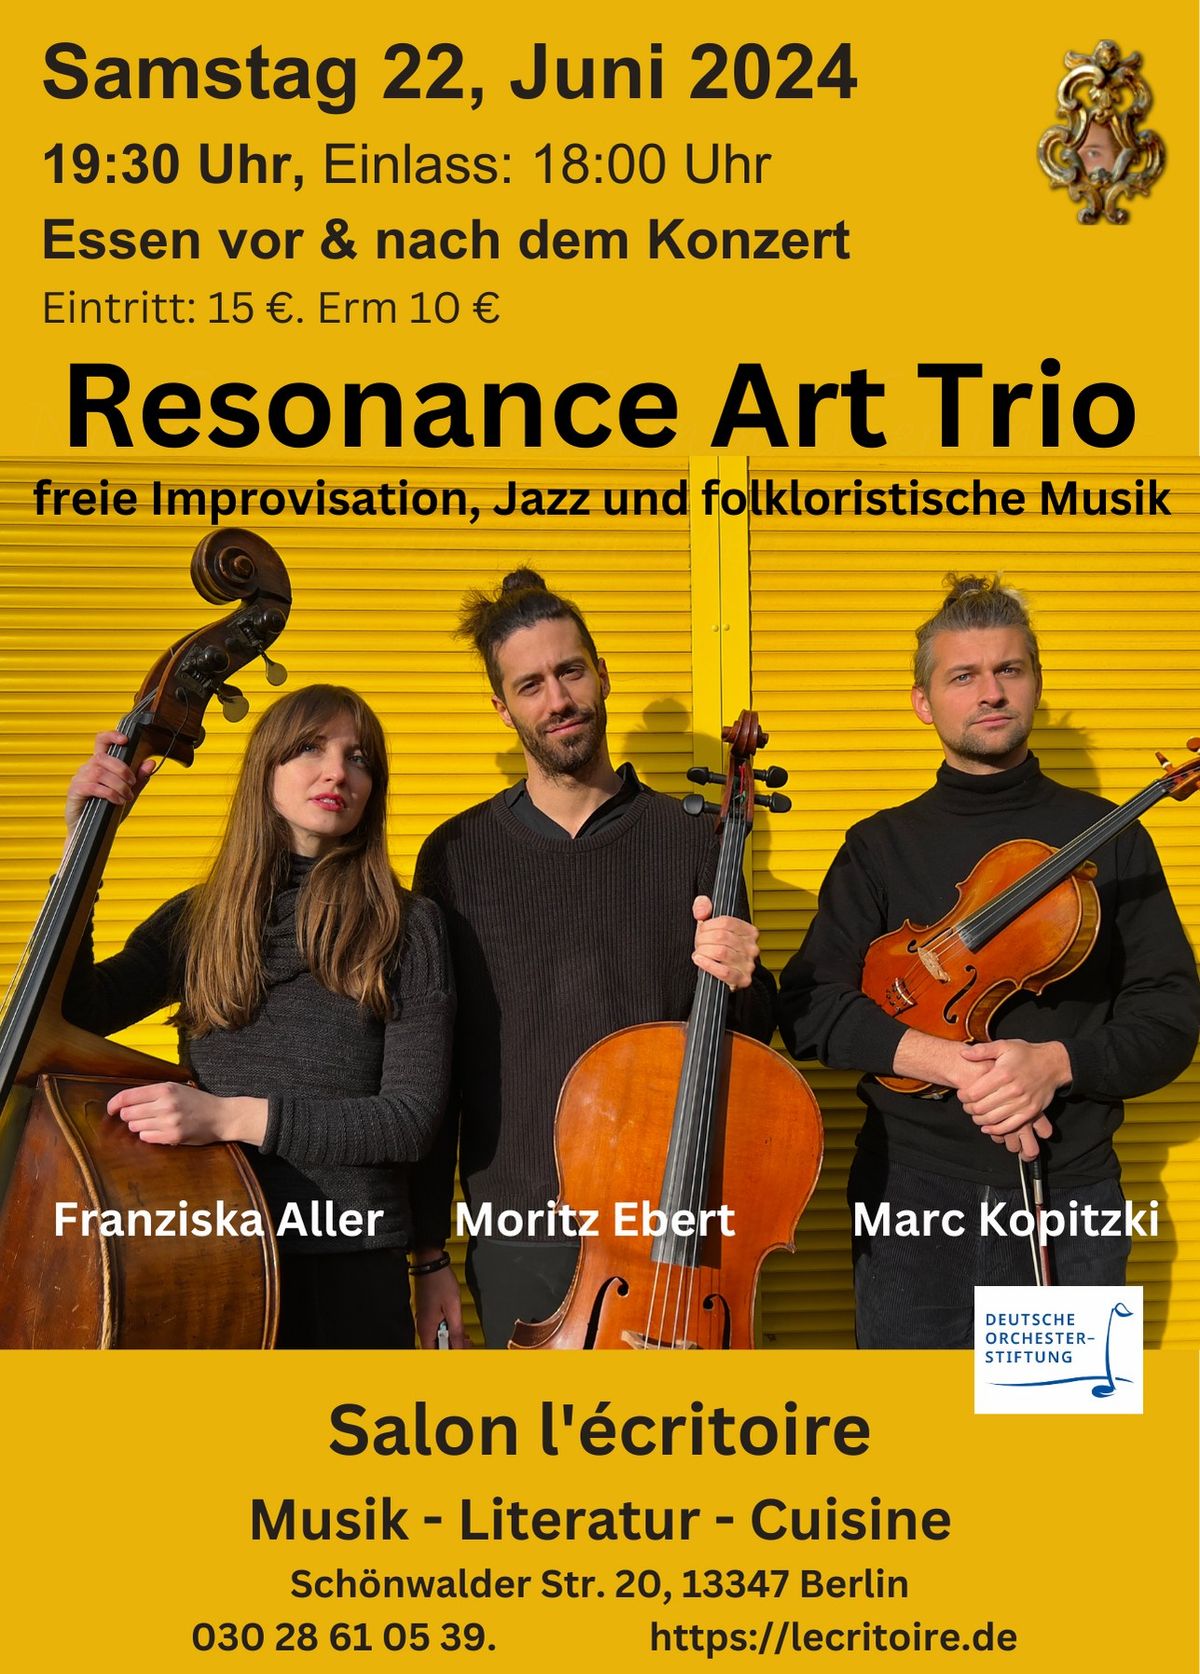 Resonance Art Trio: freie Improvisation, Jazz und folkloristische Musik